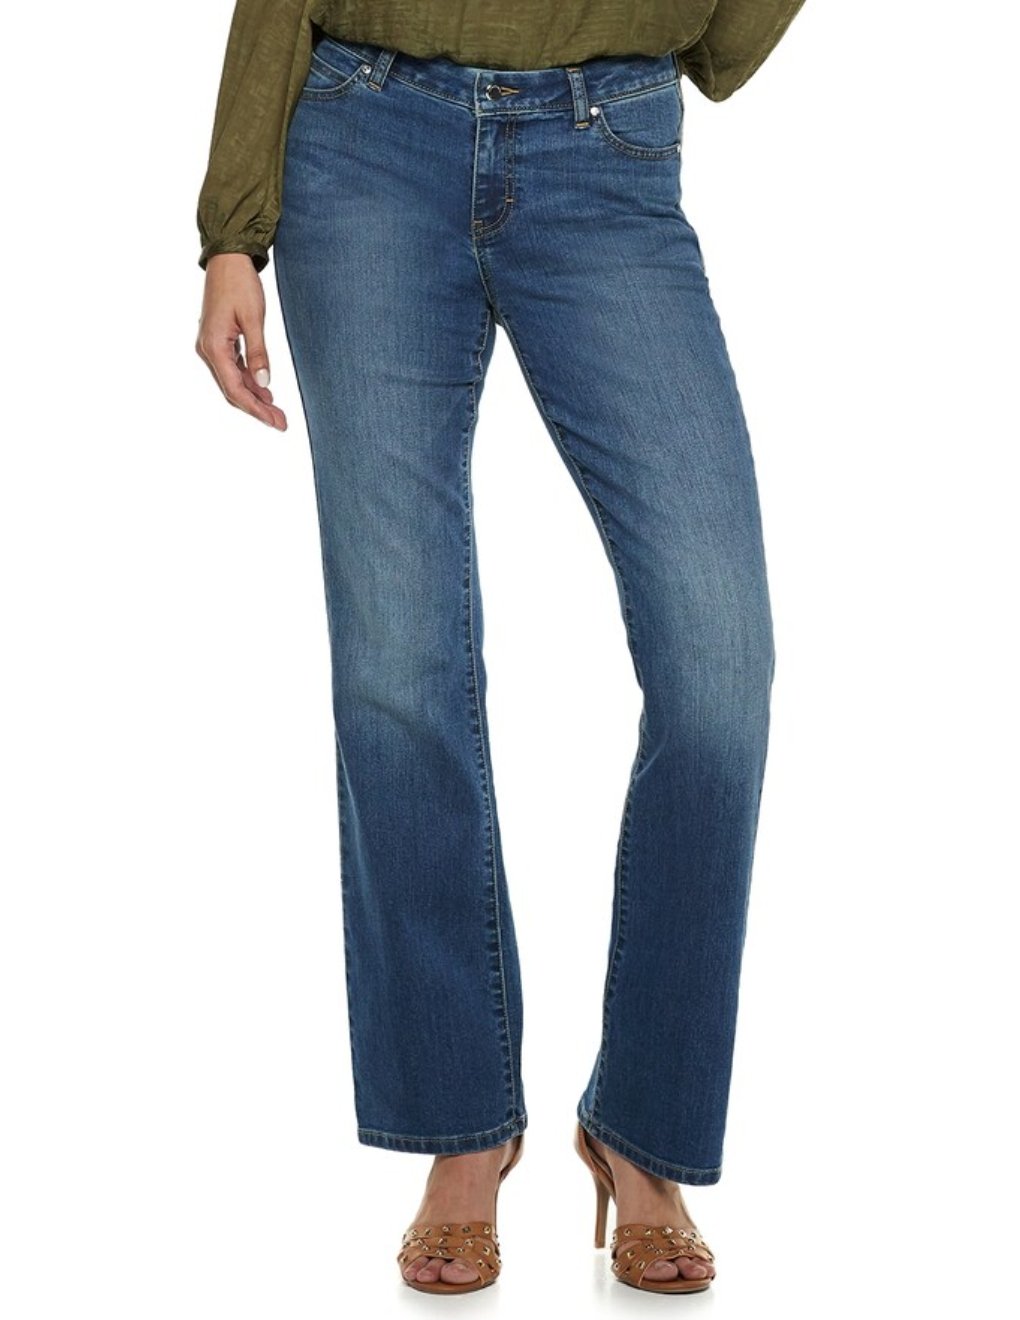 NEW Womens Jennifer Lopez Curvy Fit Bootcut Jeans Sz 0 in Medium Wash Macie